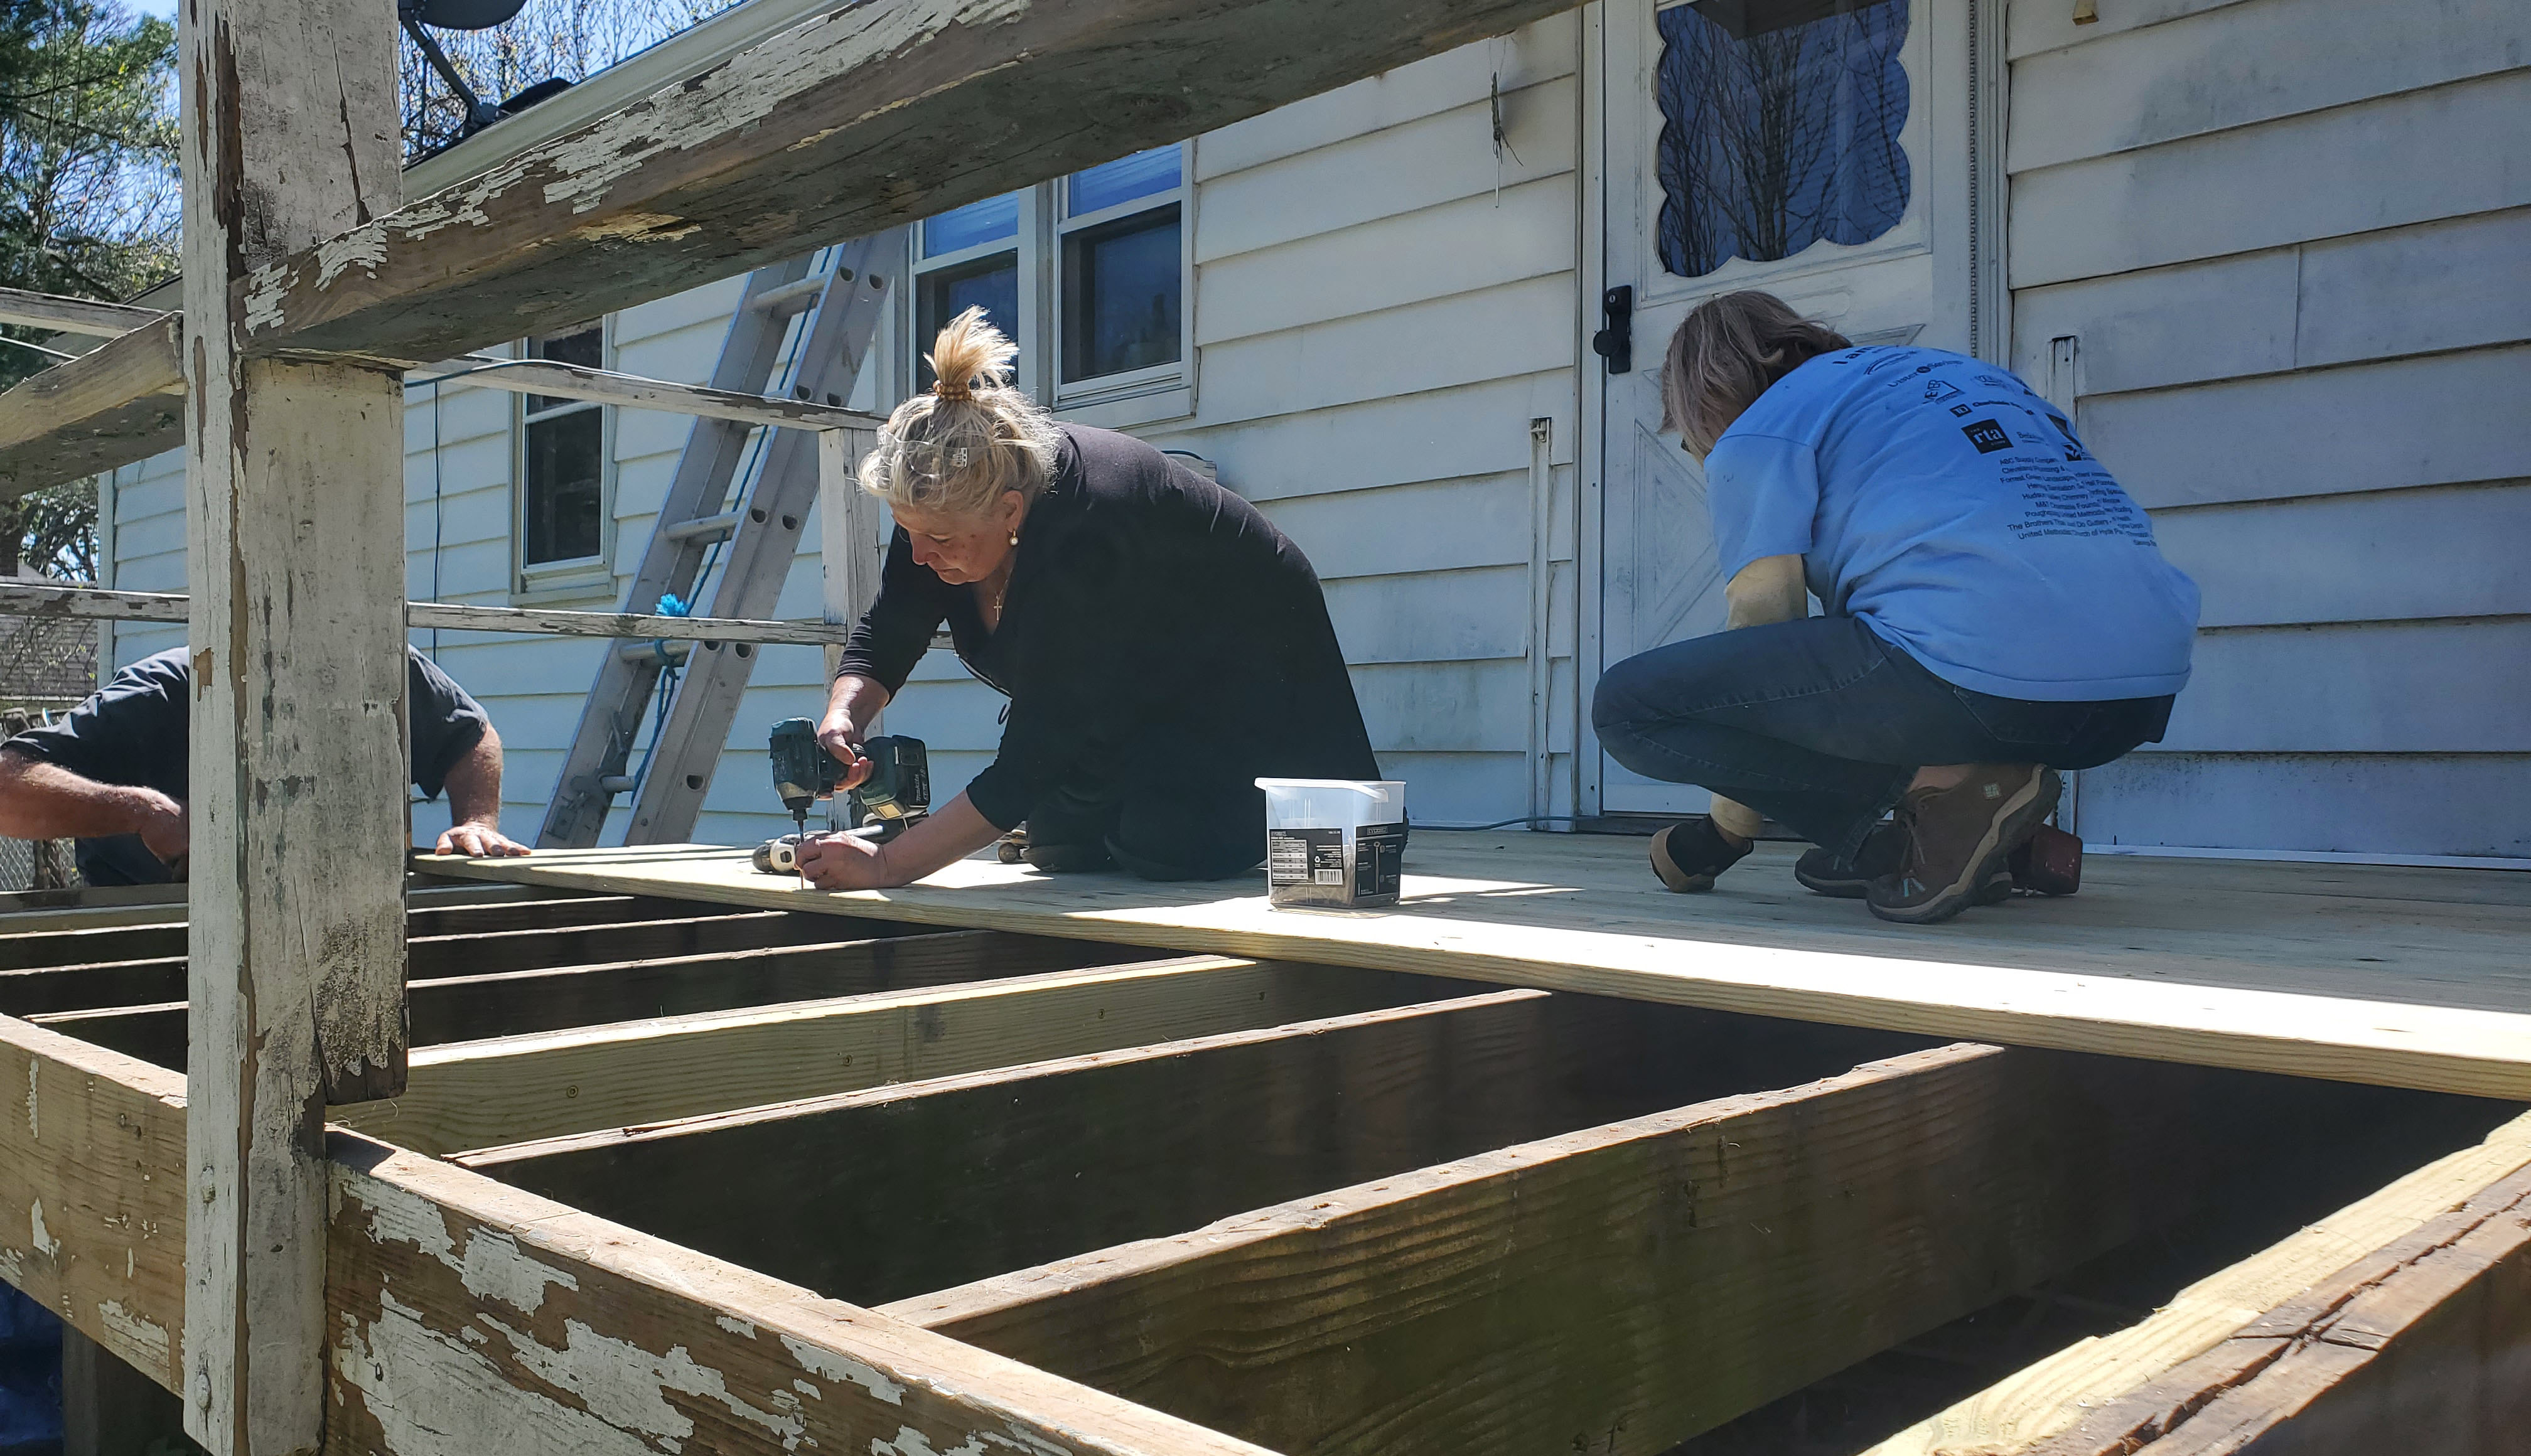 Volunteers working on back deck in need of major repairs